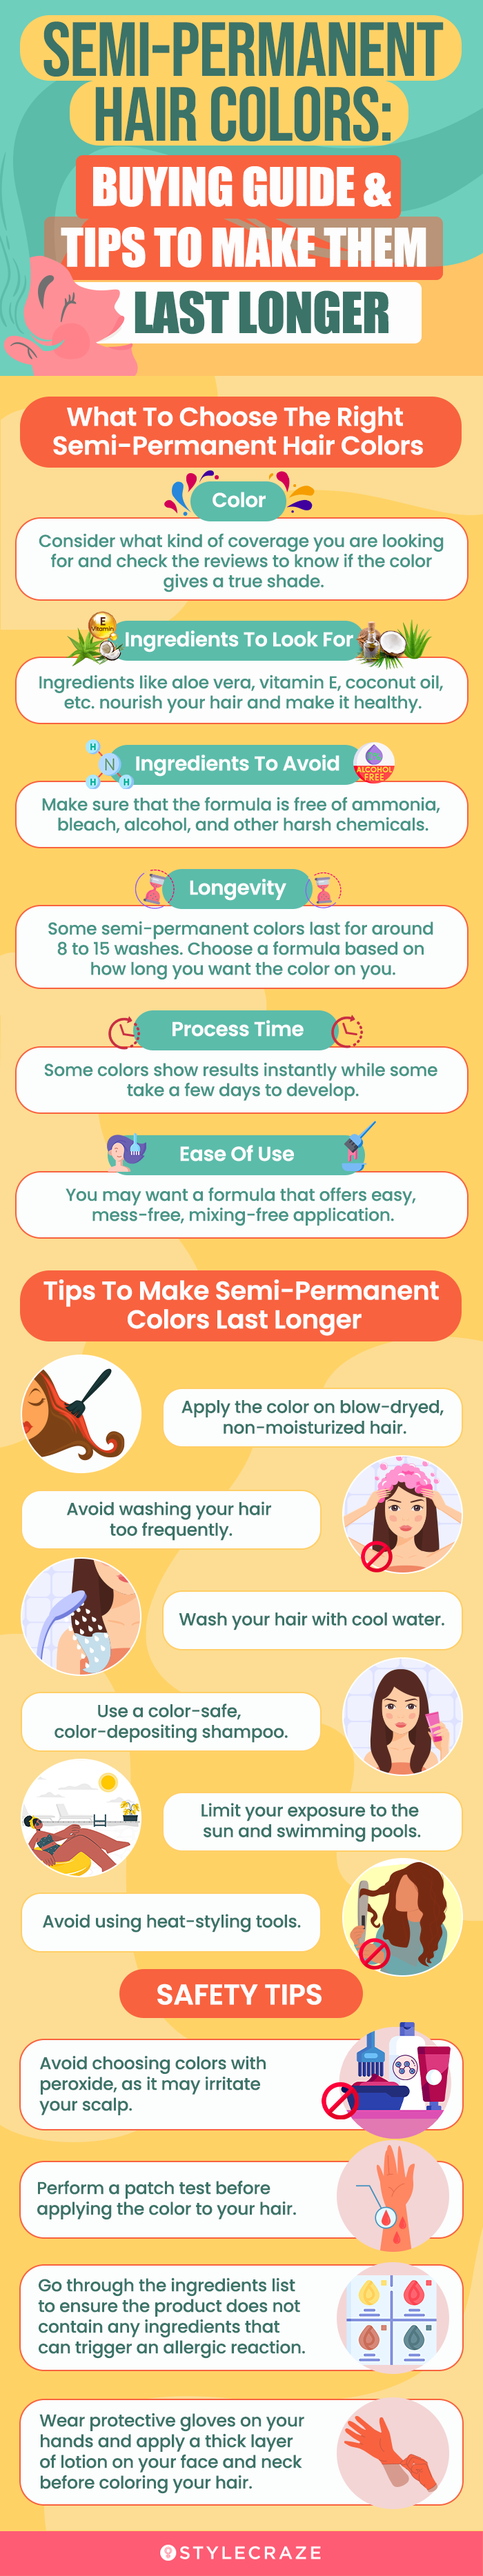 Semi-permanente haarkleuren: koopgids en tips